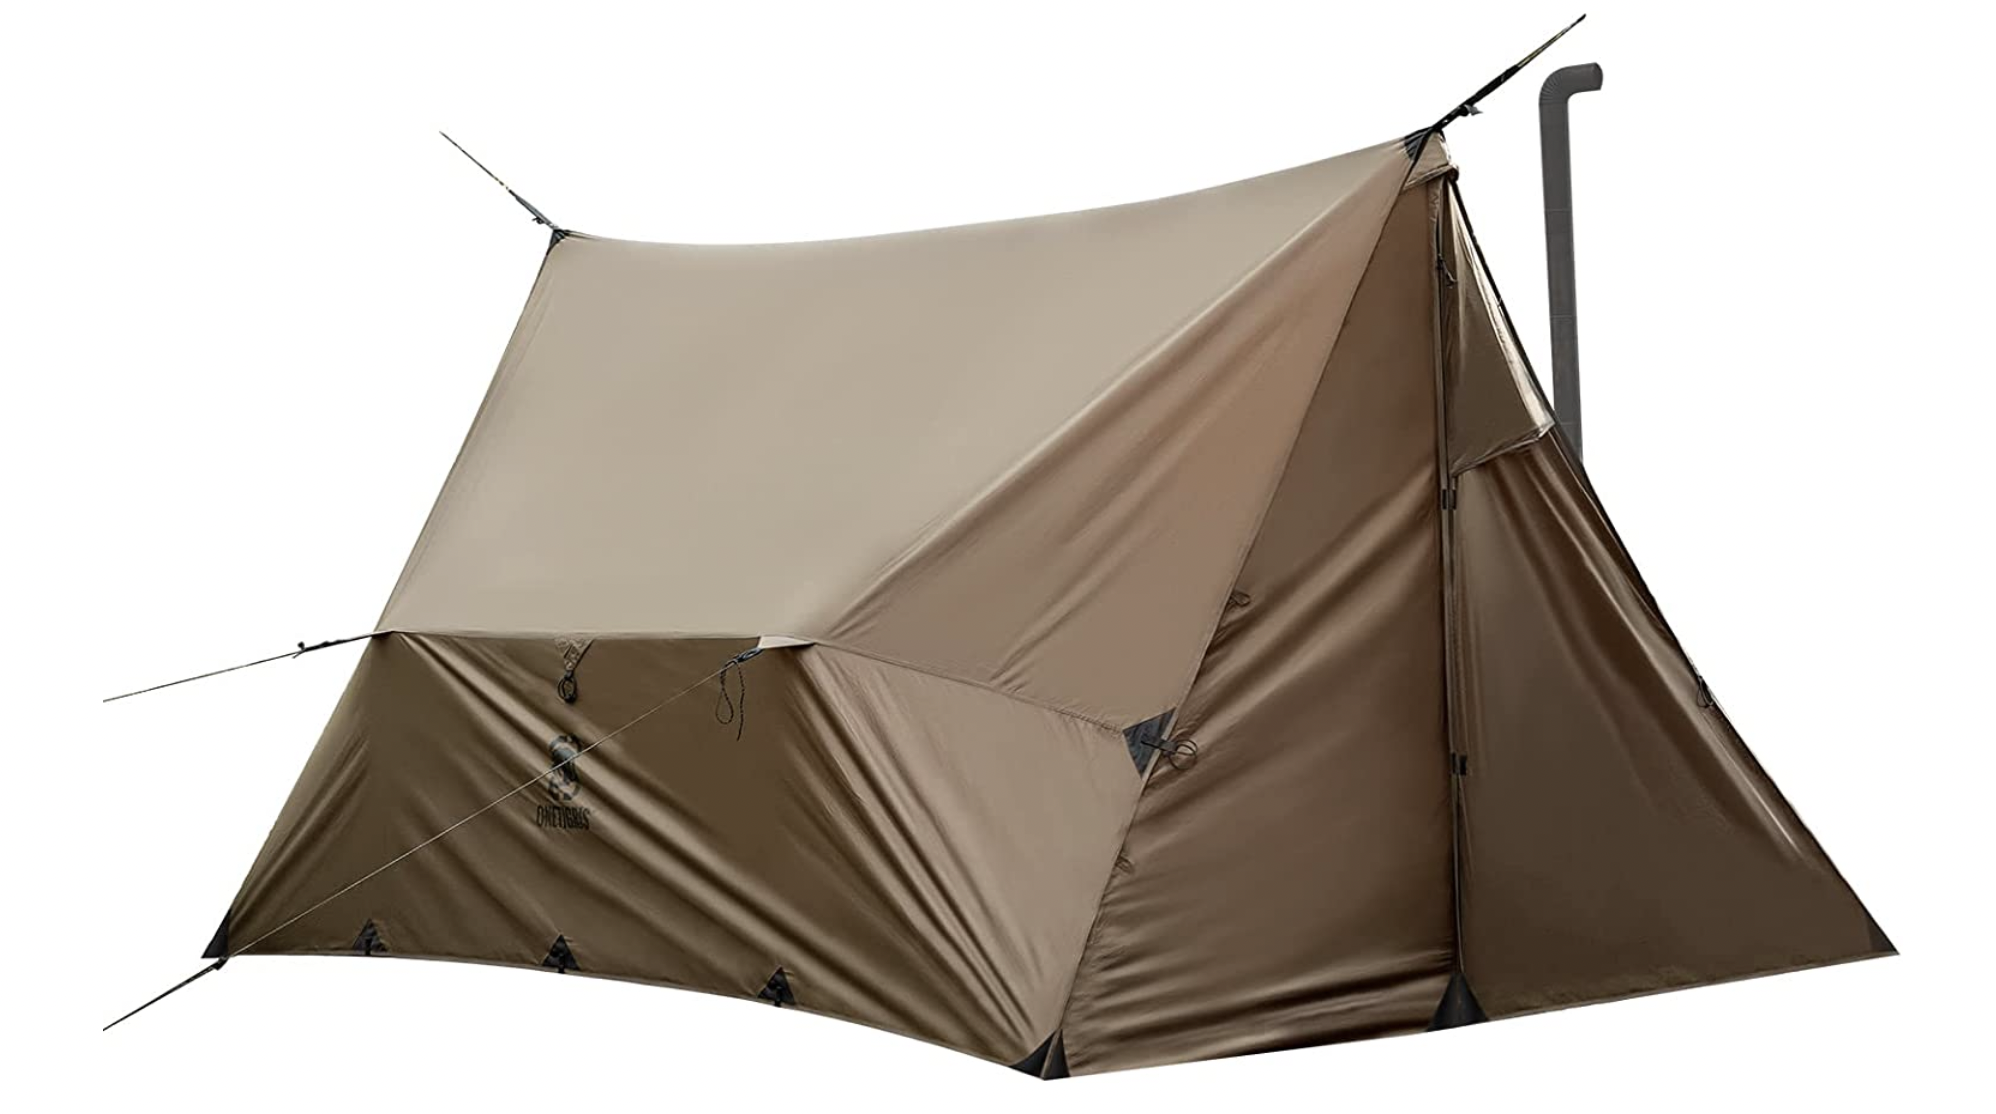 鉄ペグ 20cm 20本 大容量 テント タープ設営 キャンプ アウトドア